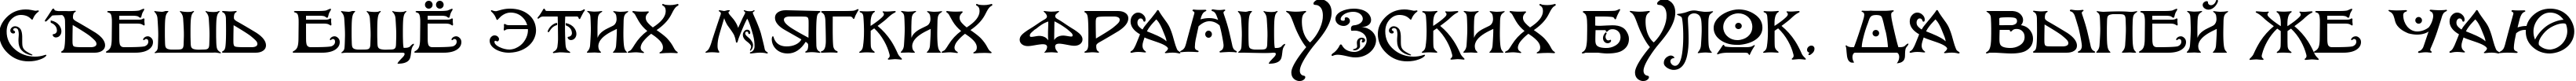 Пример написания шрифтом Baltimore Nouveau текста на русском